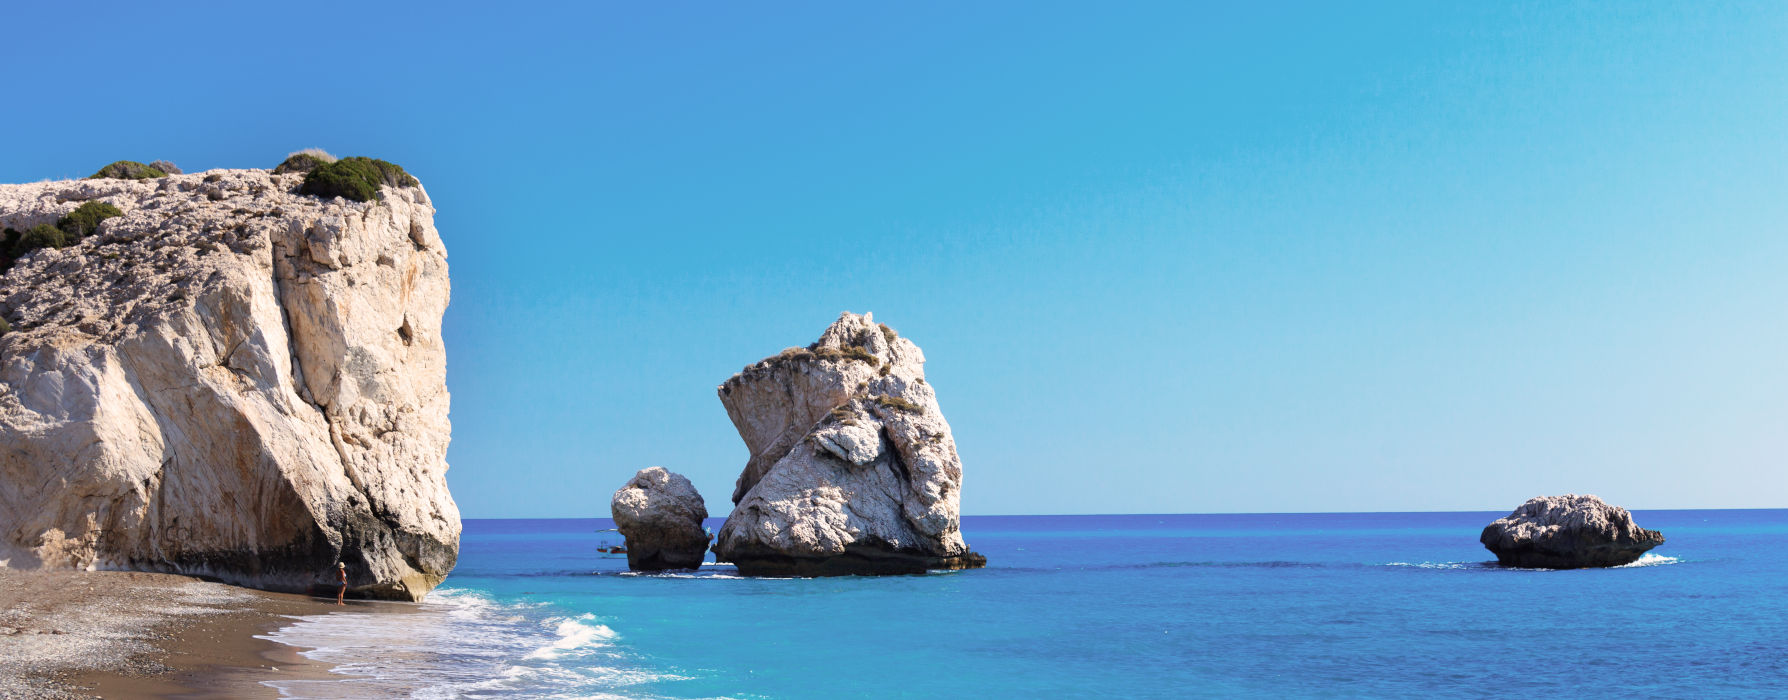 Cyprus<br class="hidden-md hidden-lg" /> Beach Holidays